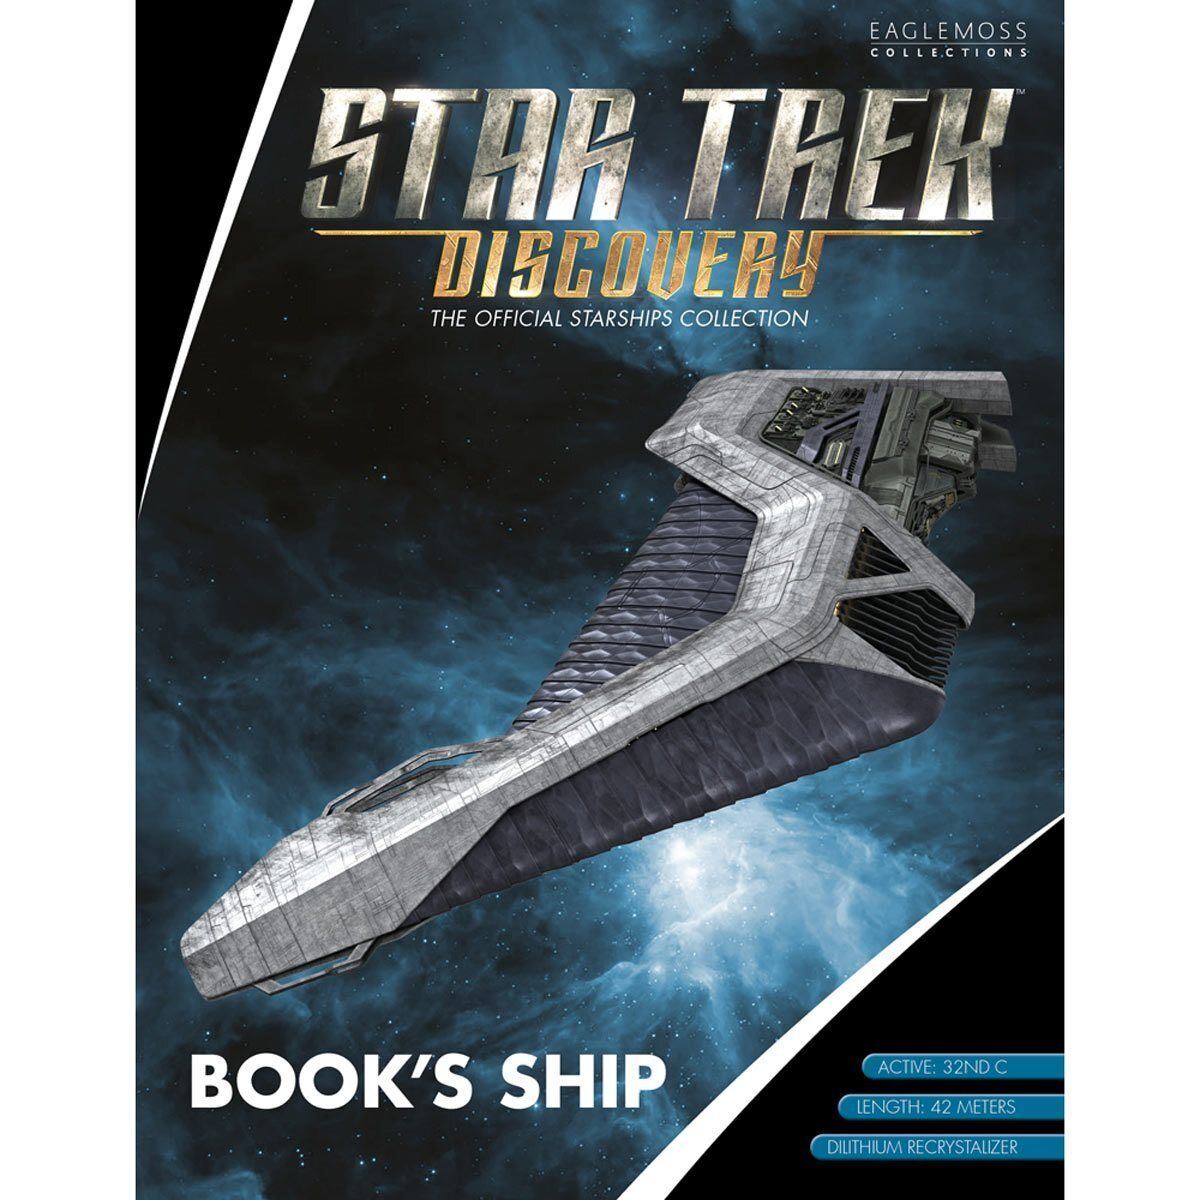 #12 Book's Ship Model Diecast Ship Discovery Universe (Eaglemoss / Star Trek)